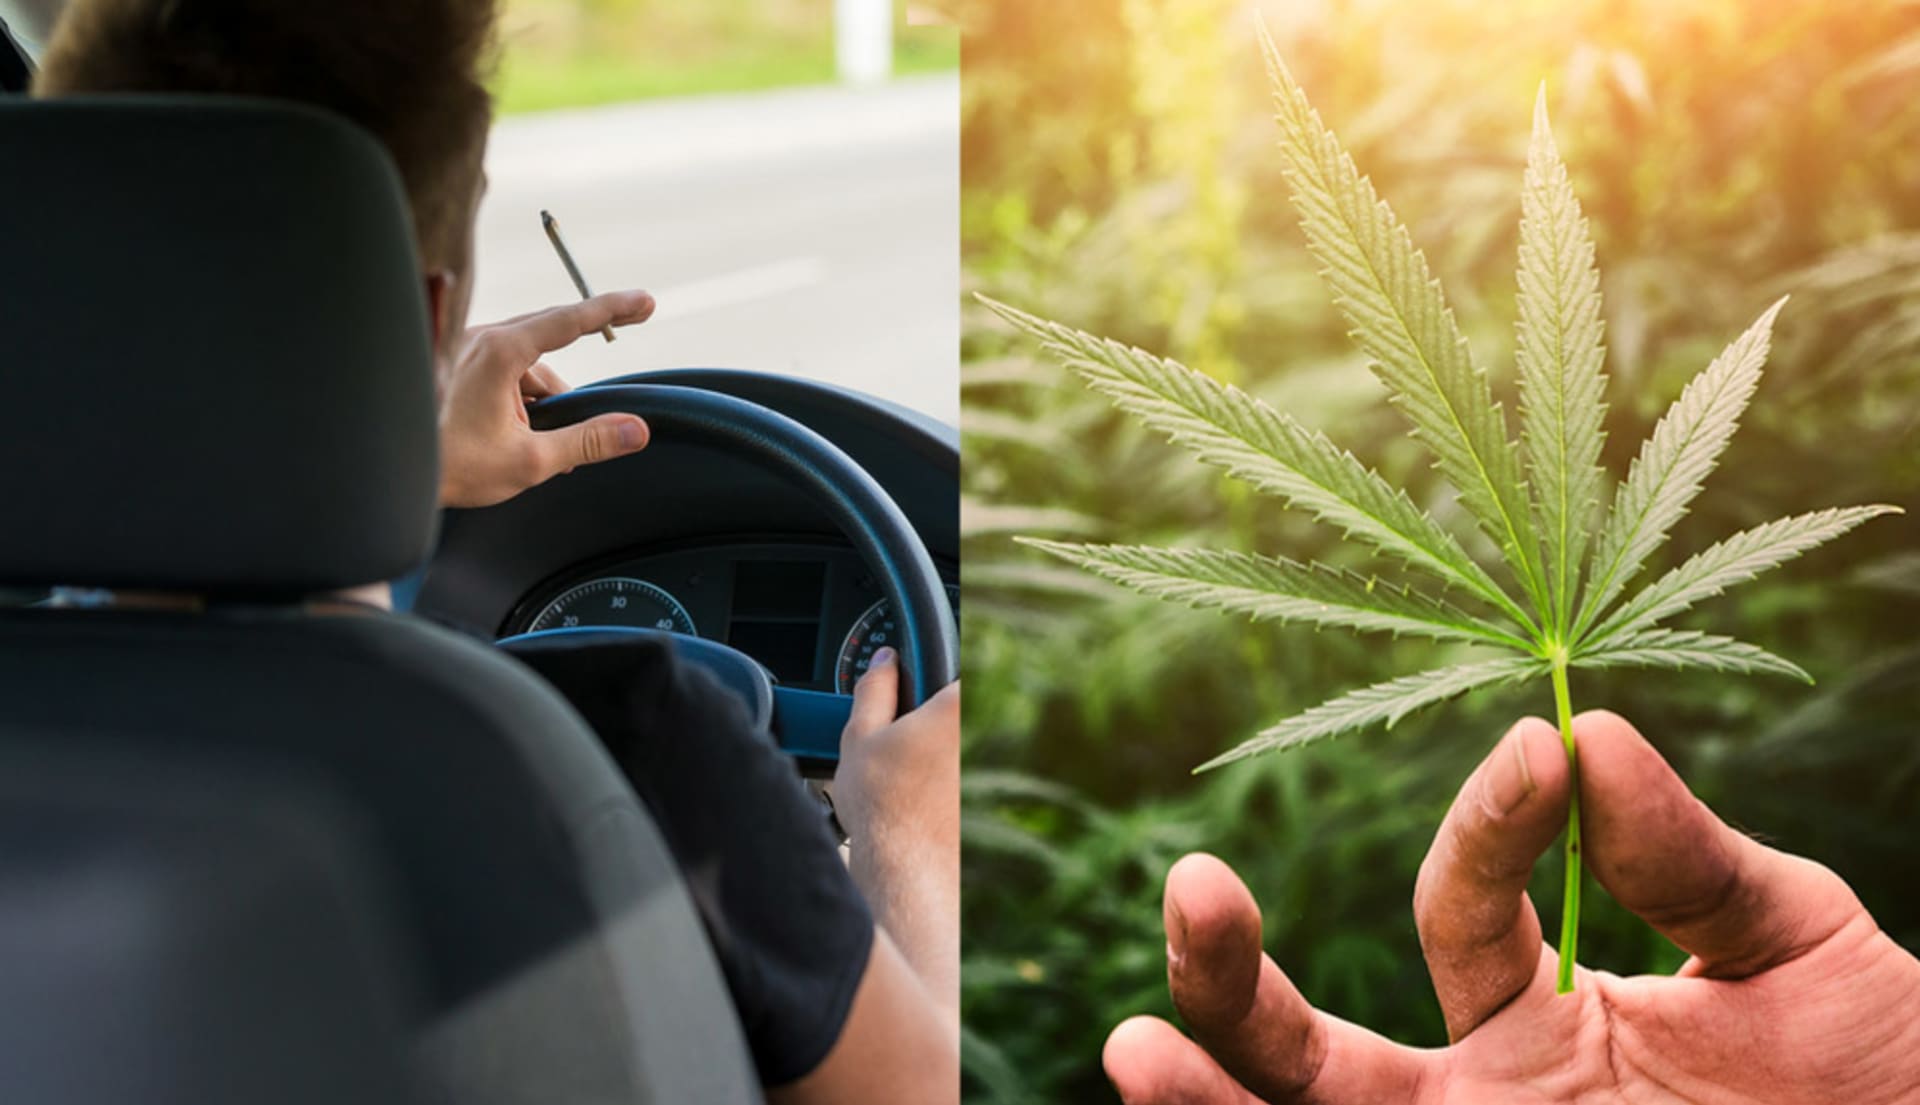 Doopravní nehodovost a legalizace marihuany mají souvislost